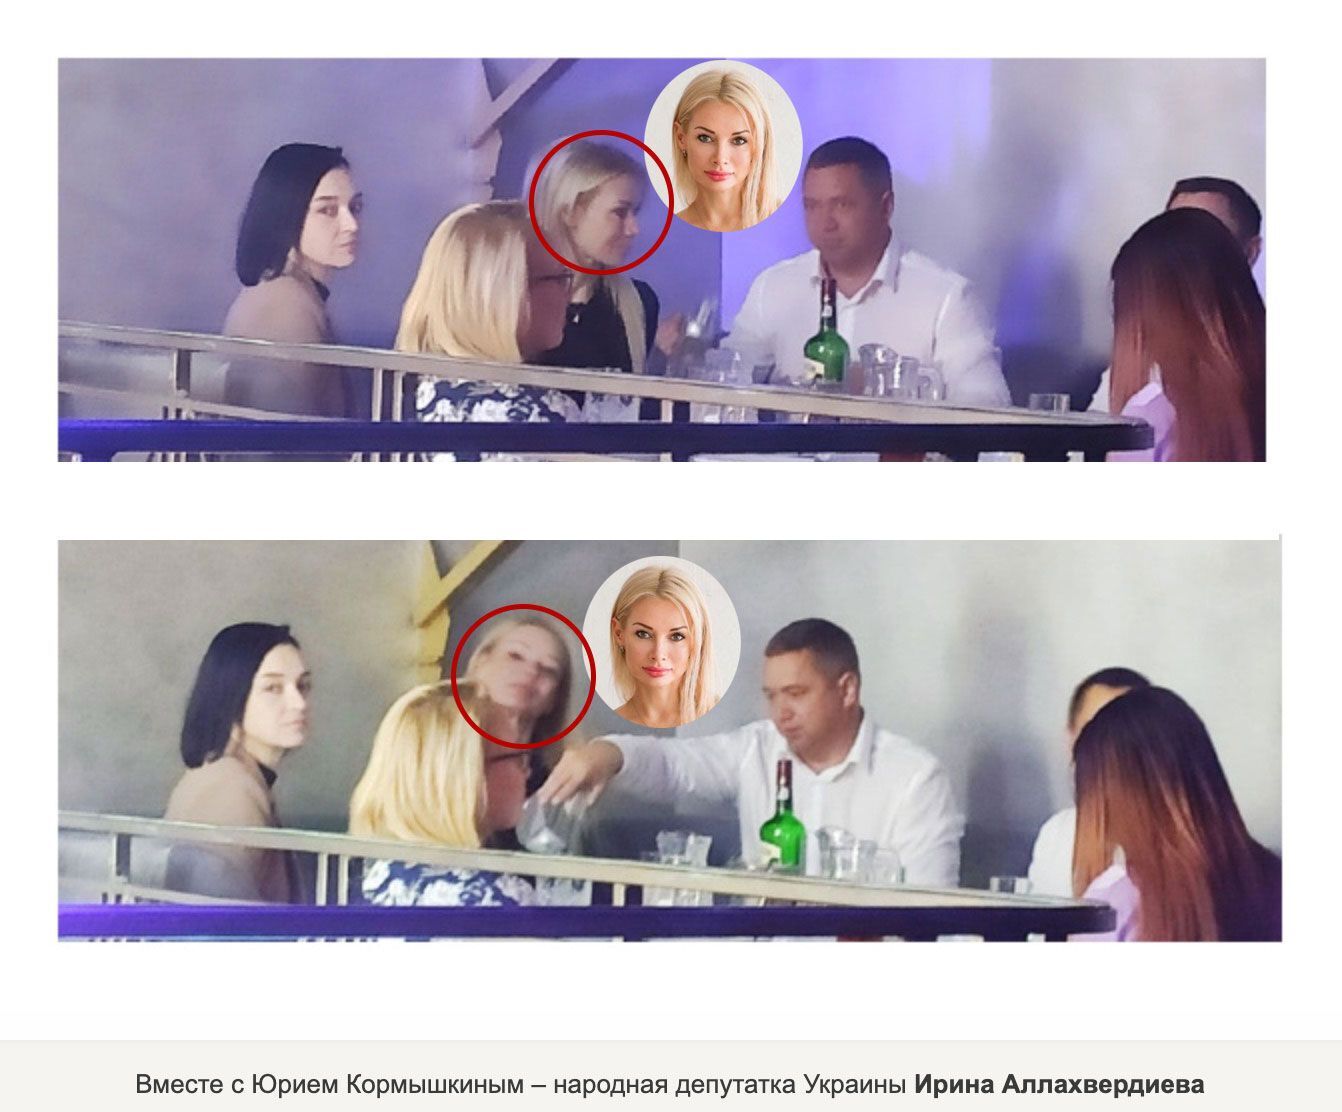 Ірина Аллахвердієва провела вечір за одним столиком із Кормишкіним